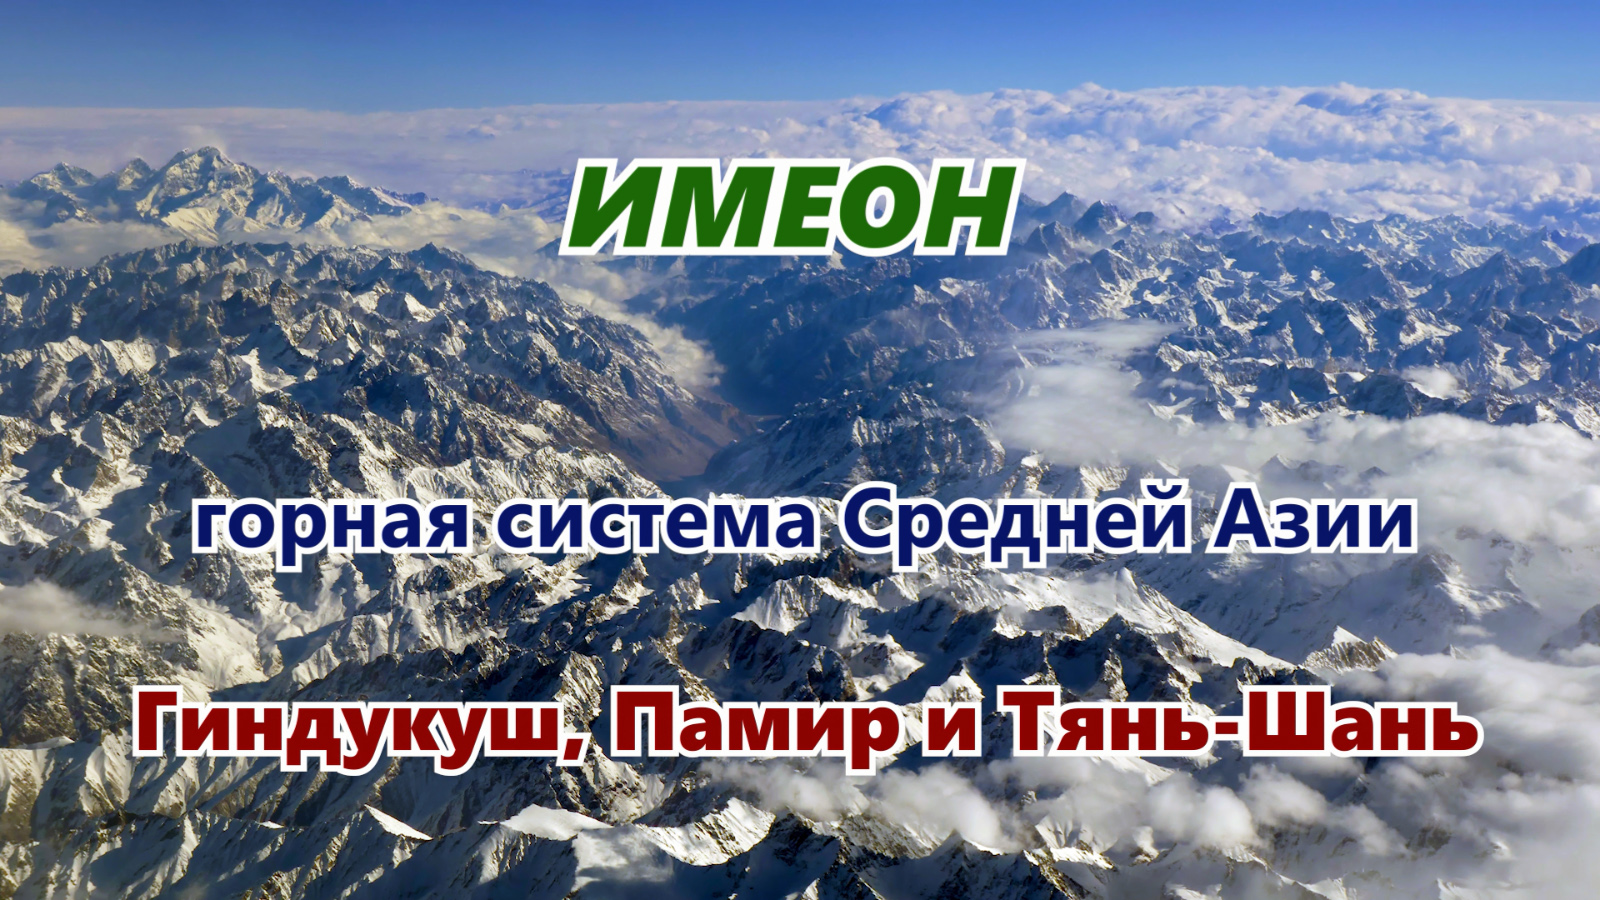 Имеон - горная система Средней Азии. Современные горы Тянь-Шань, Памир и Гиндукуш. Аэросъемка